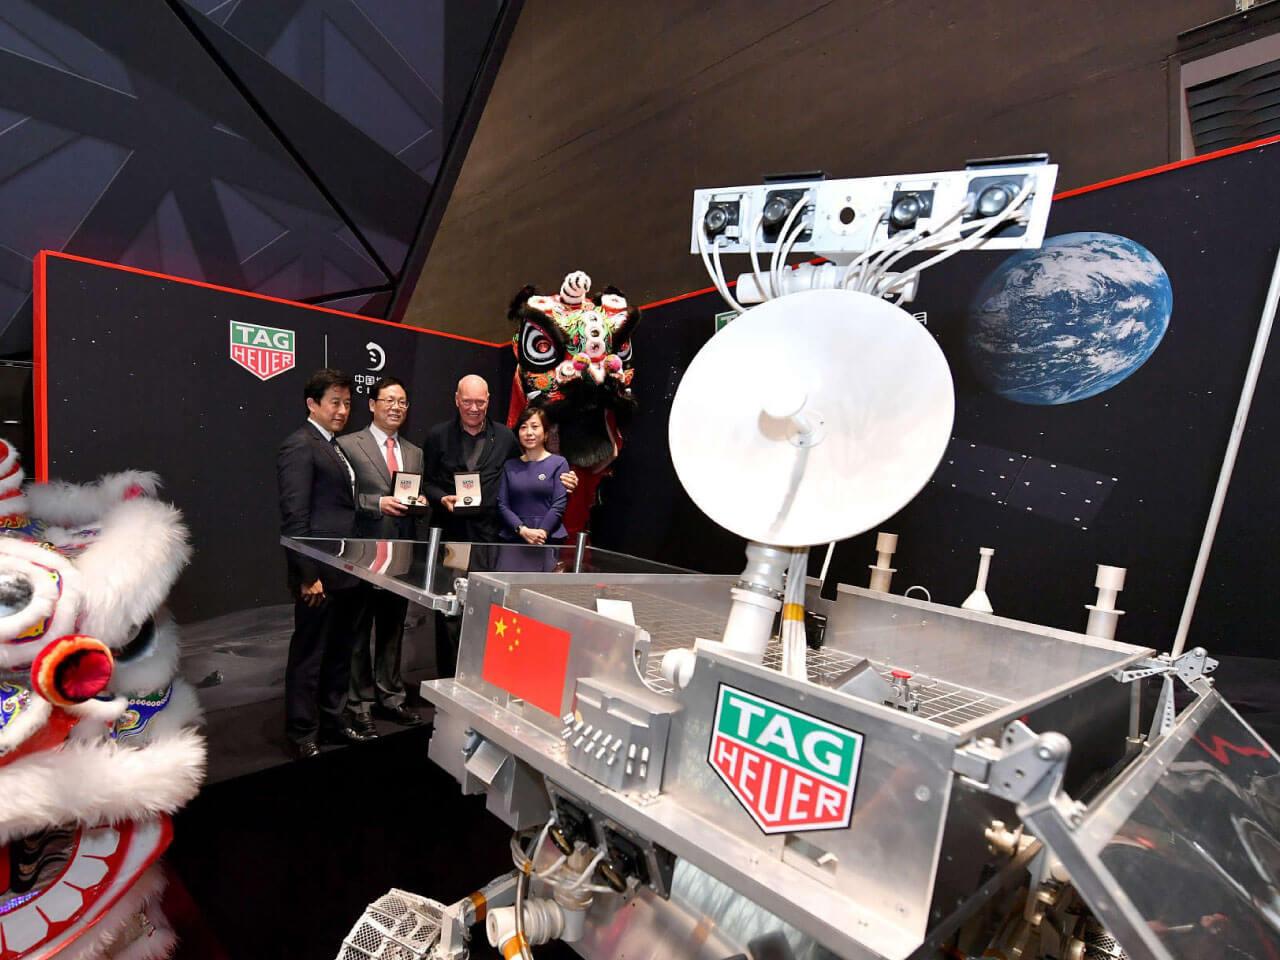 タグ・ホイヤーが中国の月探査プログラムを記念した2つのスペシャルエディションを発表